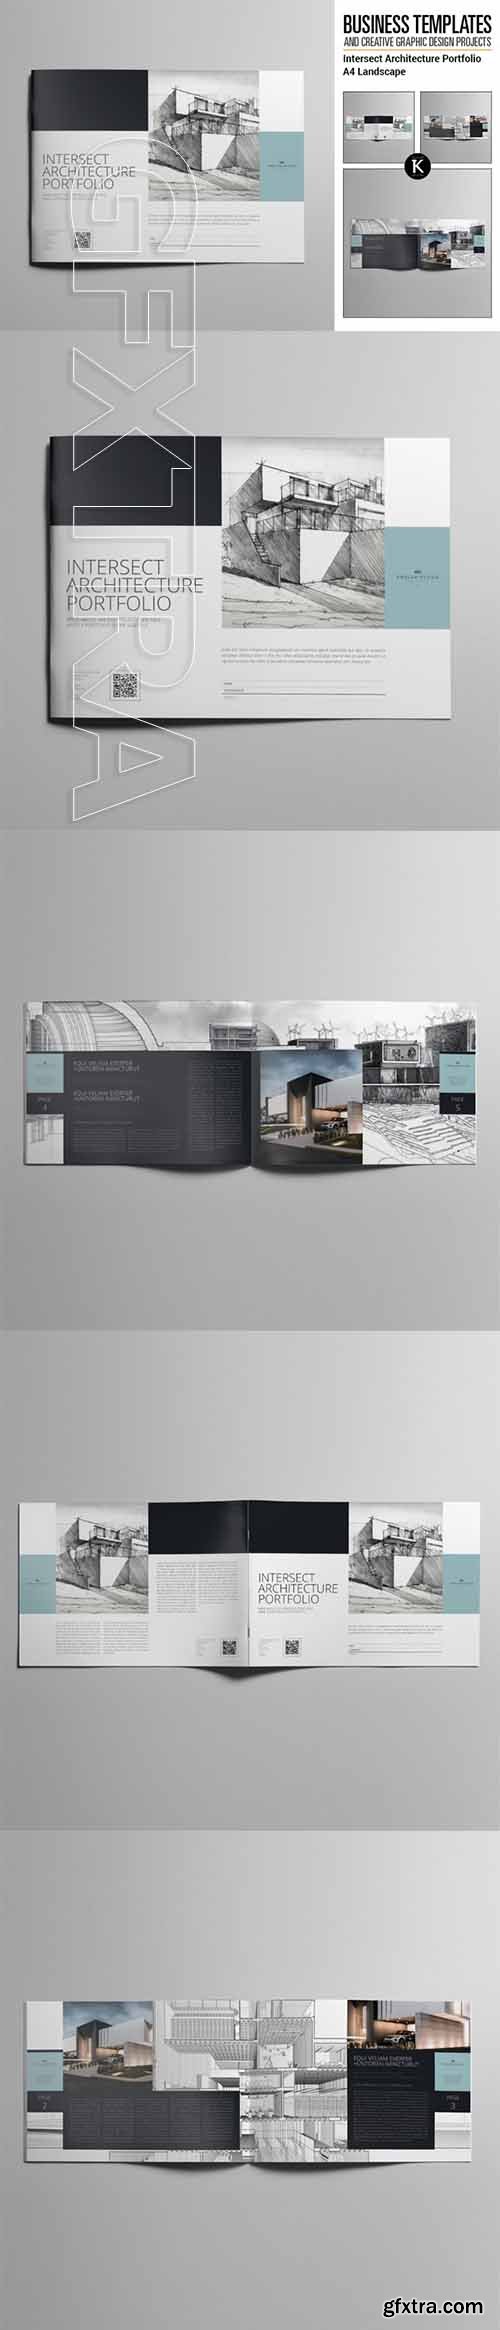 Intersect Architecture Portfolio A4 Landscape